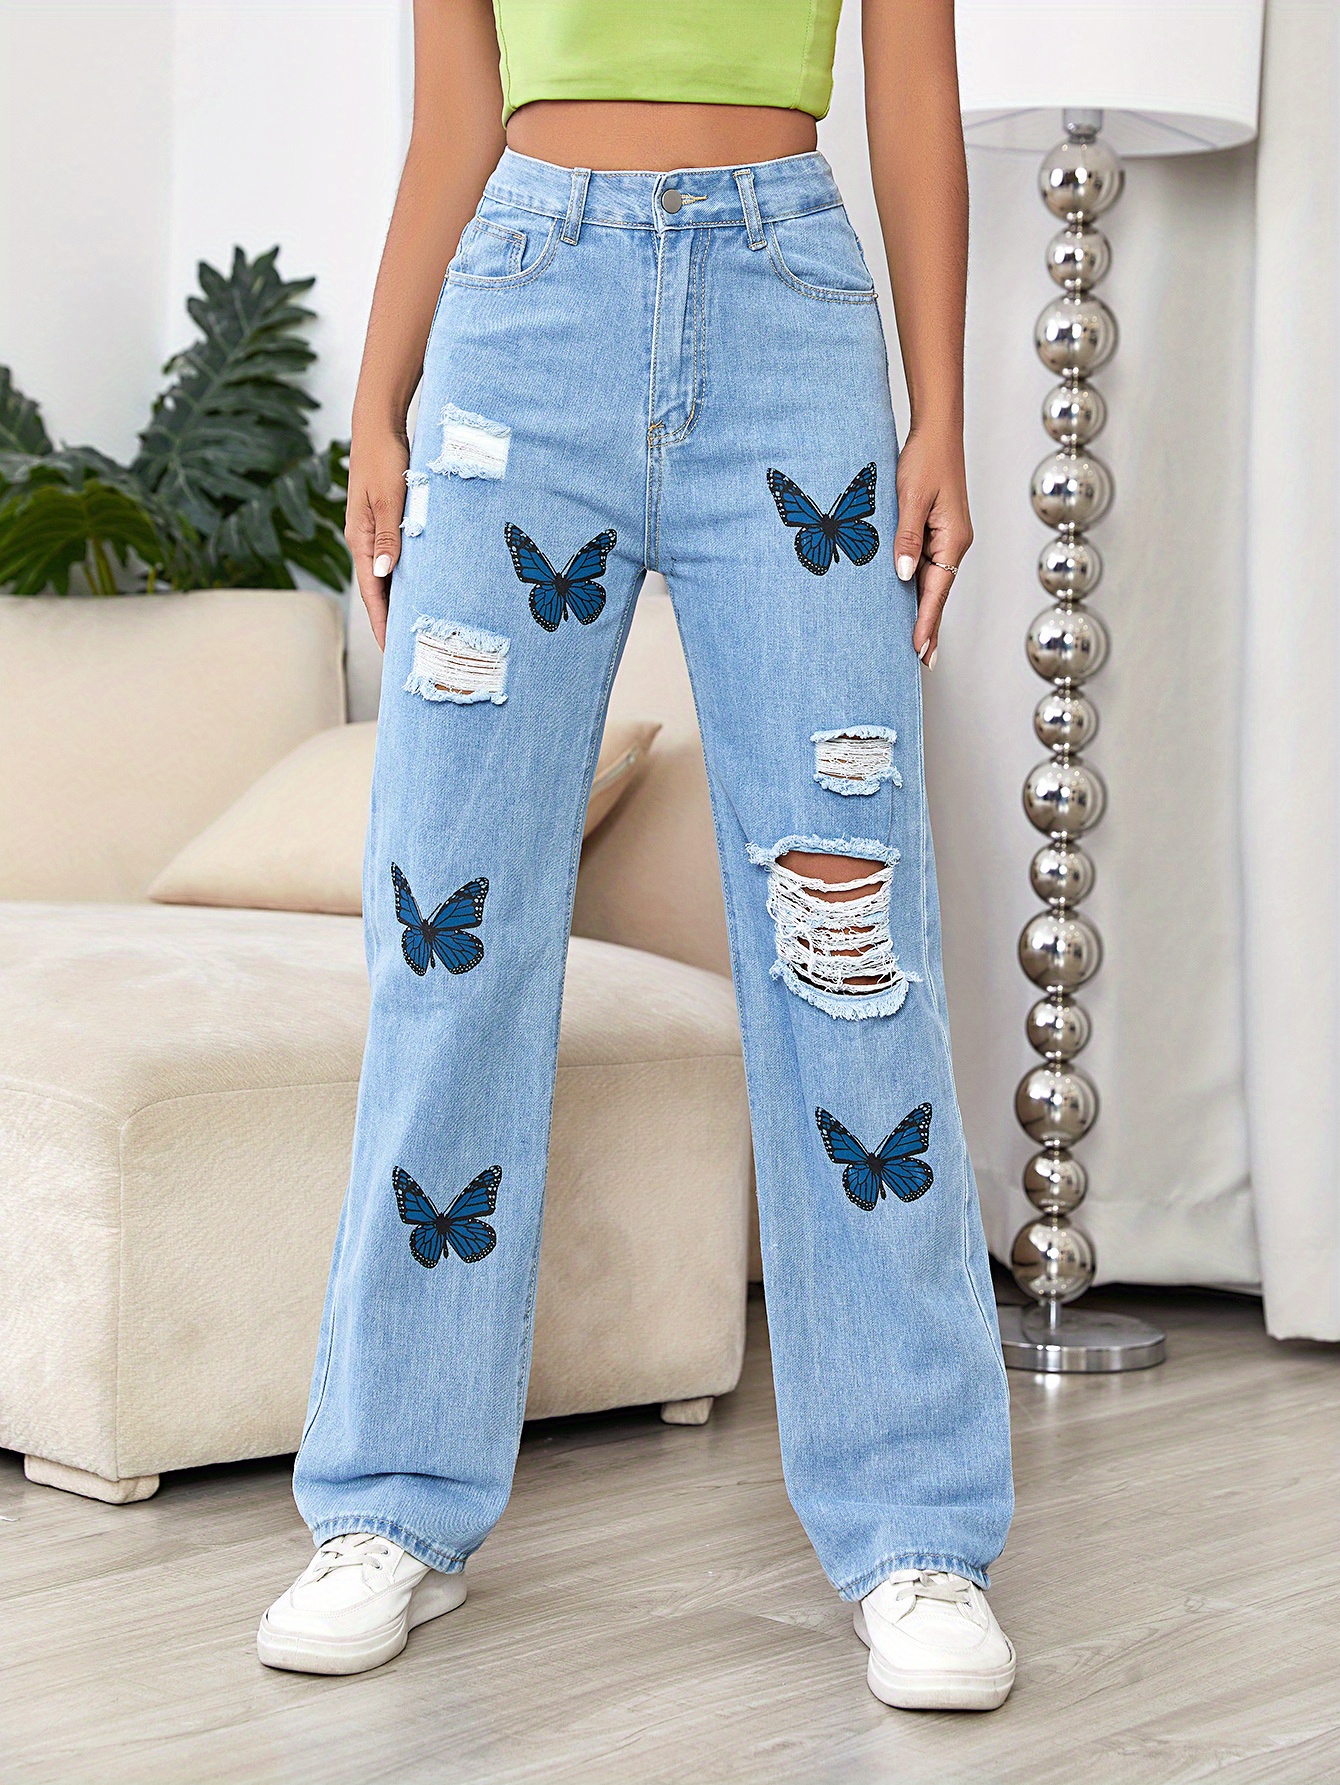 Edvintorg Flower/Butterfly Jeans For Women Sexy Elegant Denim